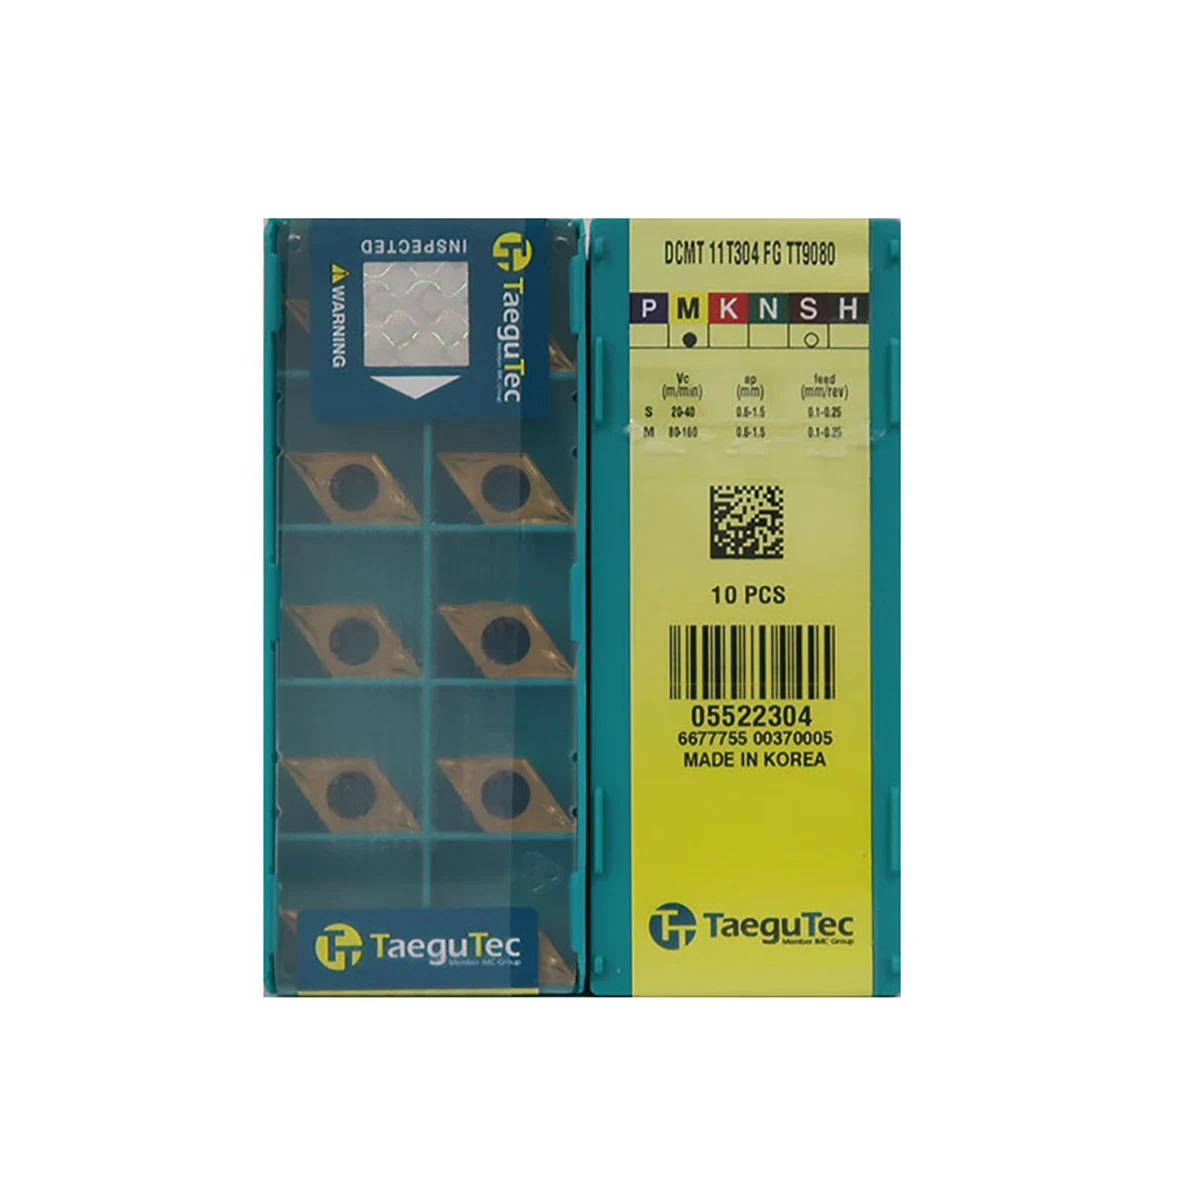 

TaeguTec 100% Original DCMT DCMT070208 DCMT11T304 DCMT11T308 DCMT070204 TT9080 Medium Roughing Carbide Turning Inserts